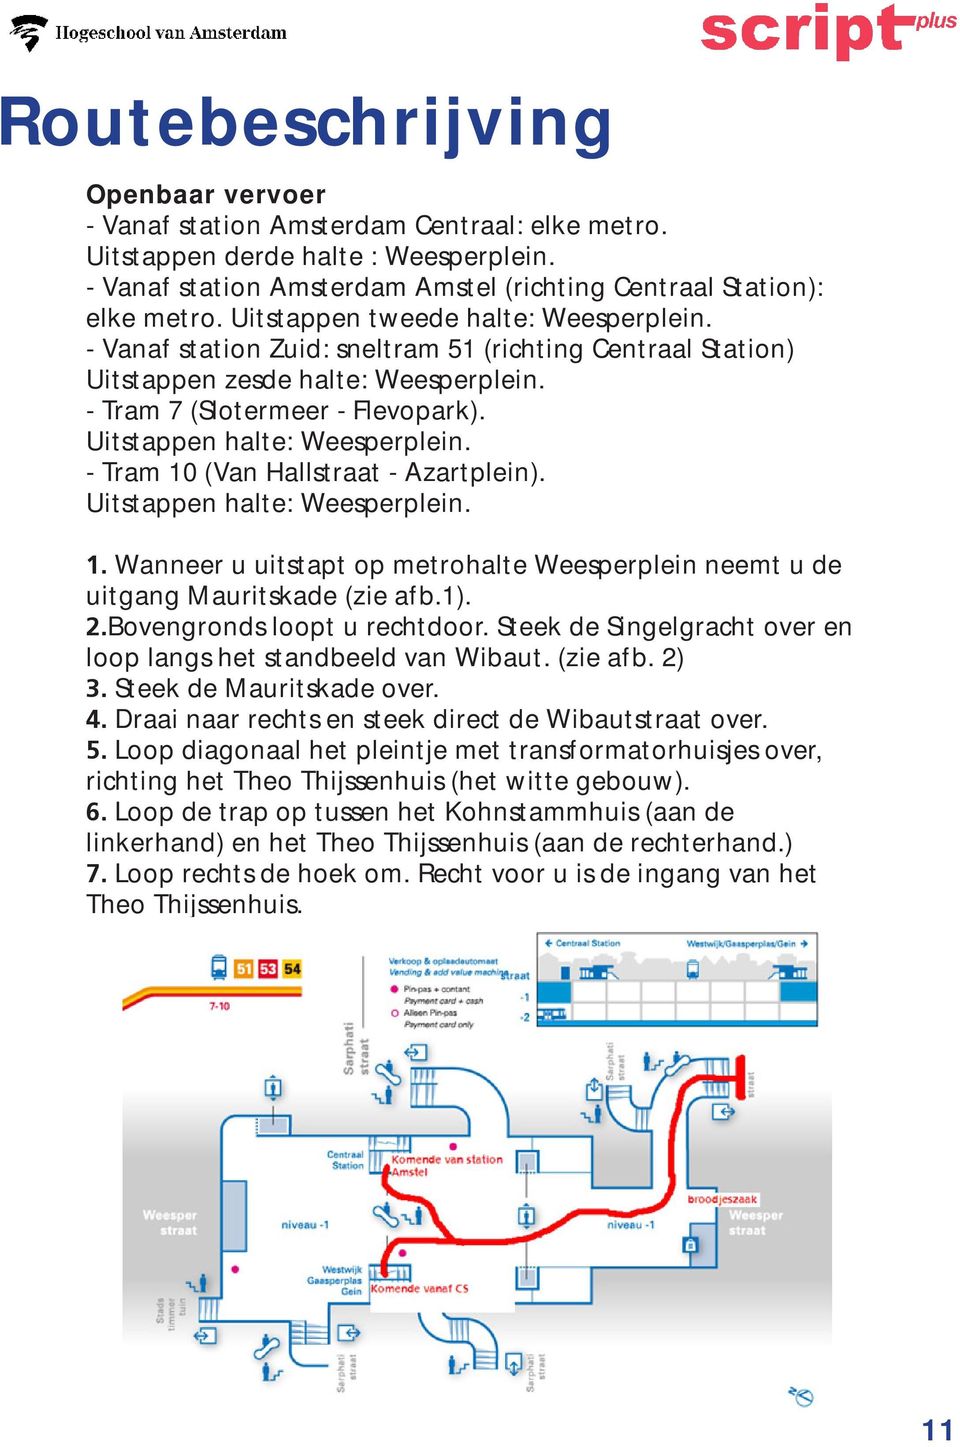 Uitstappen halte: Weesperplein. - Tram 10 (Van Hallstraat - Azartplein). Uitstappen halte: Weesperplein. 1. Wanneer u uitstapt op metrohalte Weesperplein neemt u de uitgang Mauritskade (zie afb.1). 2.